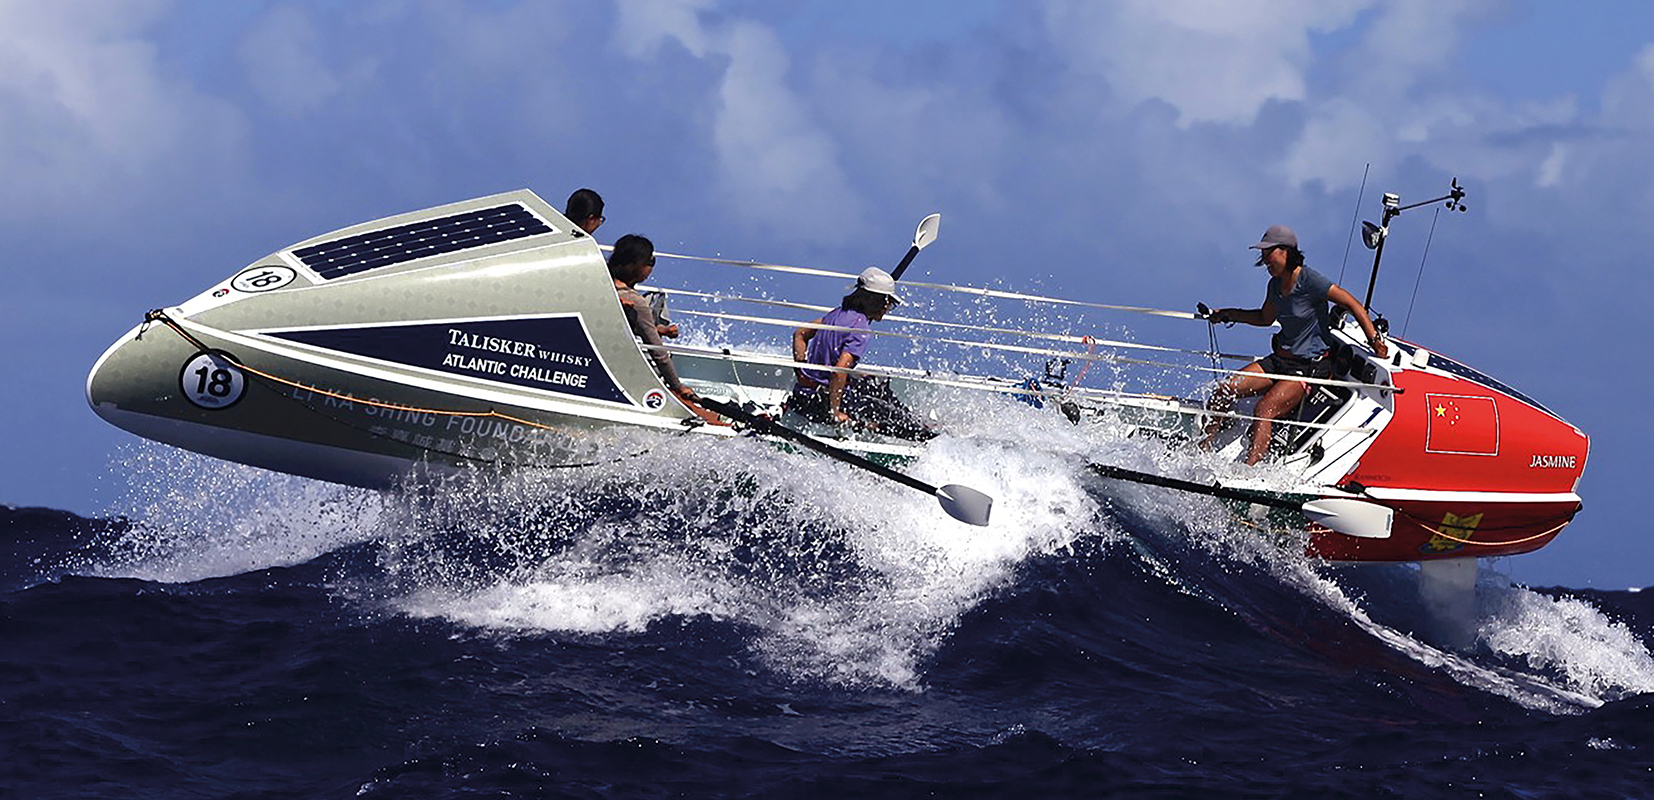 La "Talisker Atlantic Challenge" esta considerada como una de las regatas más exigentes